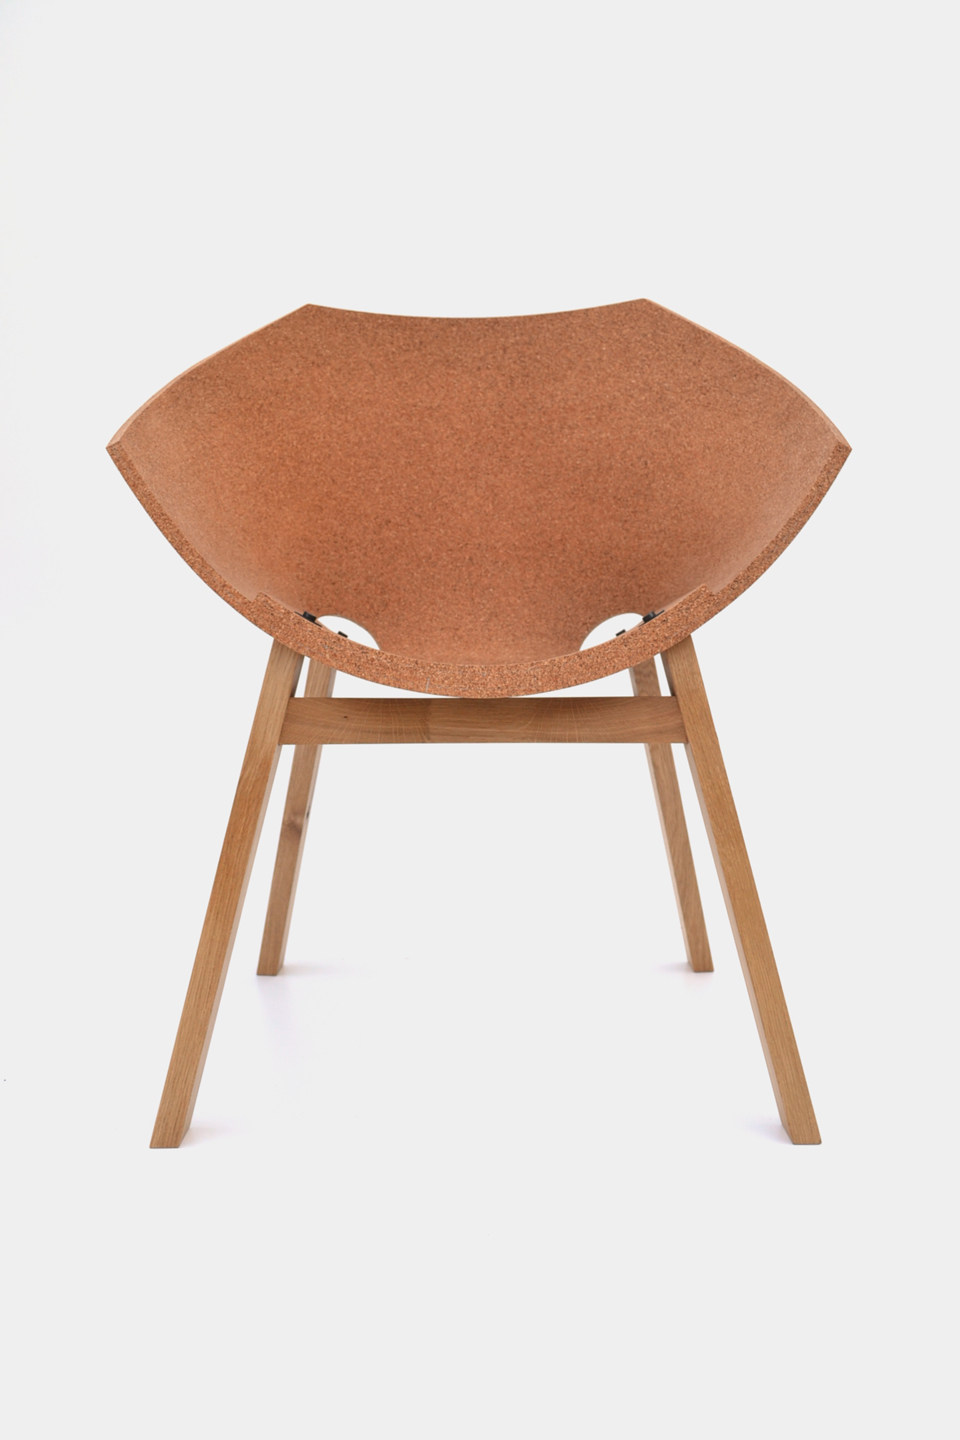 corkigami-chair-by-carlos-ortega-design-2.jpg